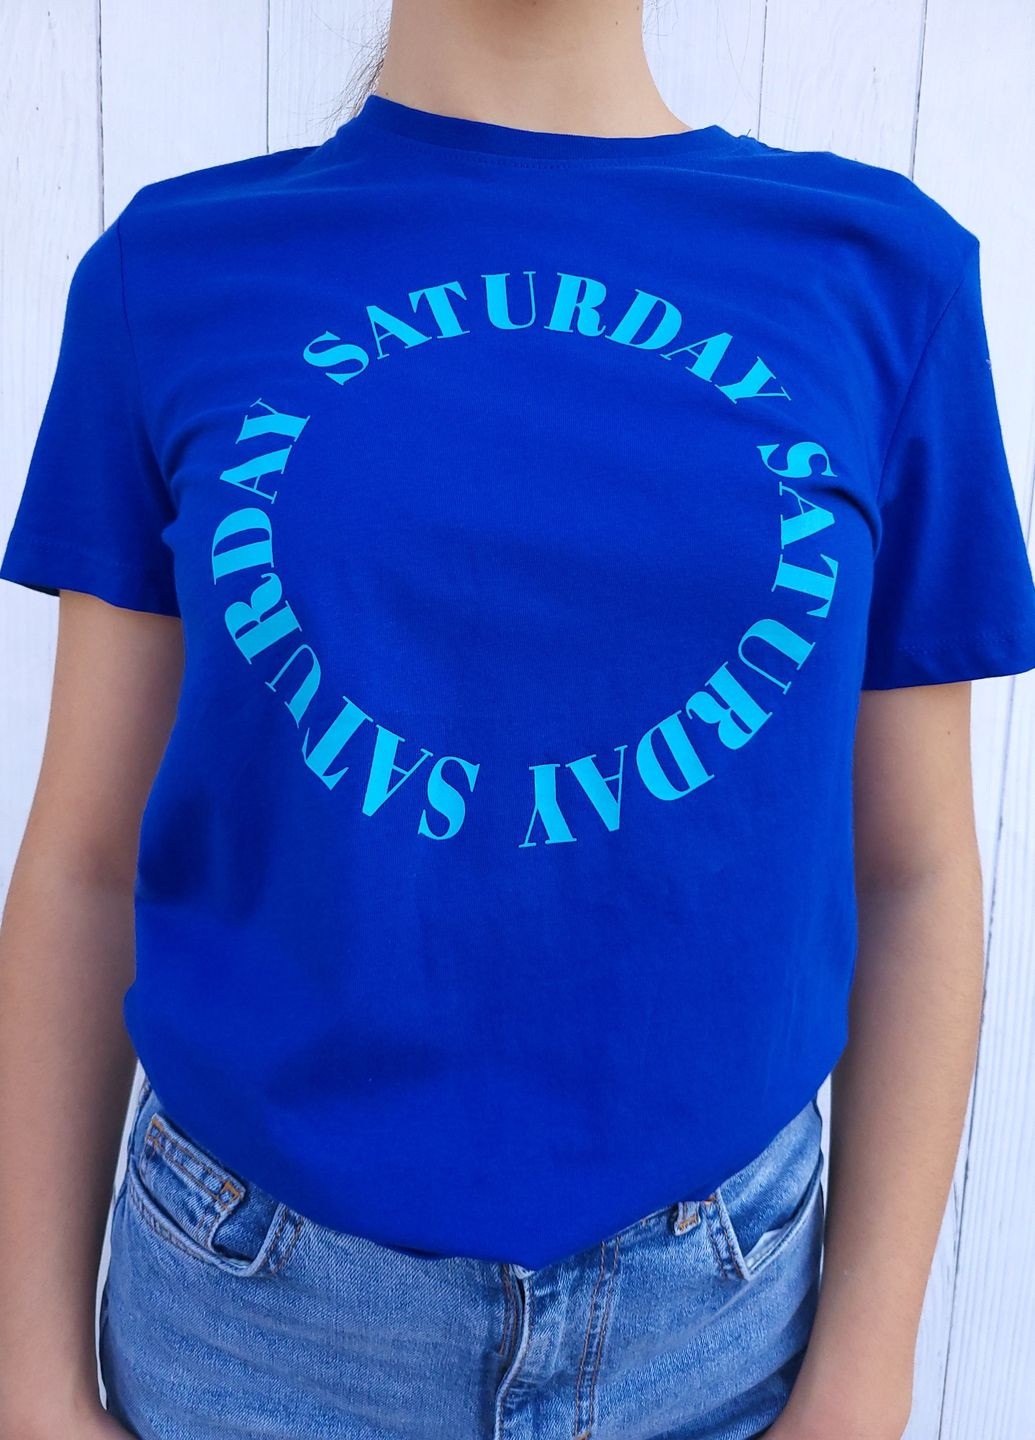 Синяя футболка женская классическая с надписью Only